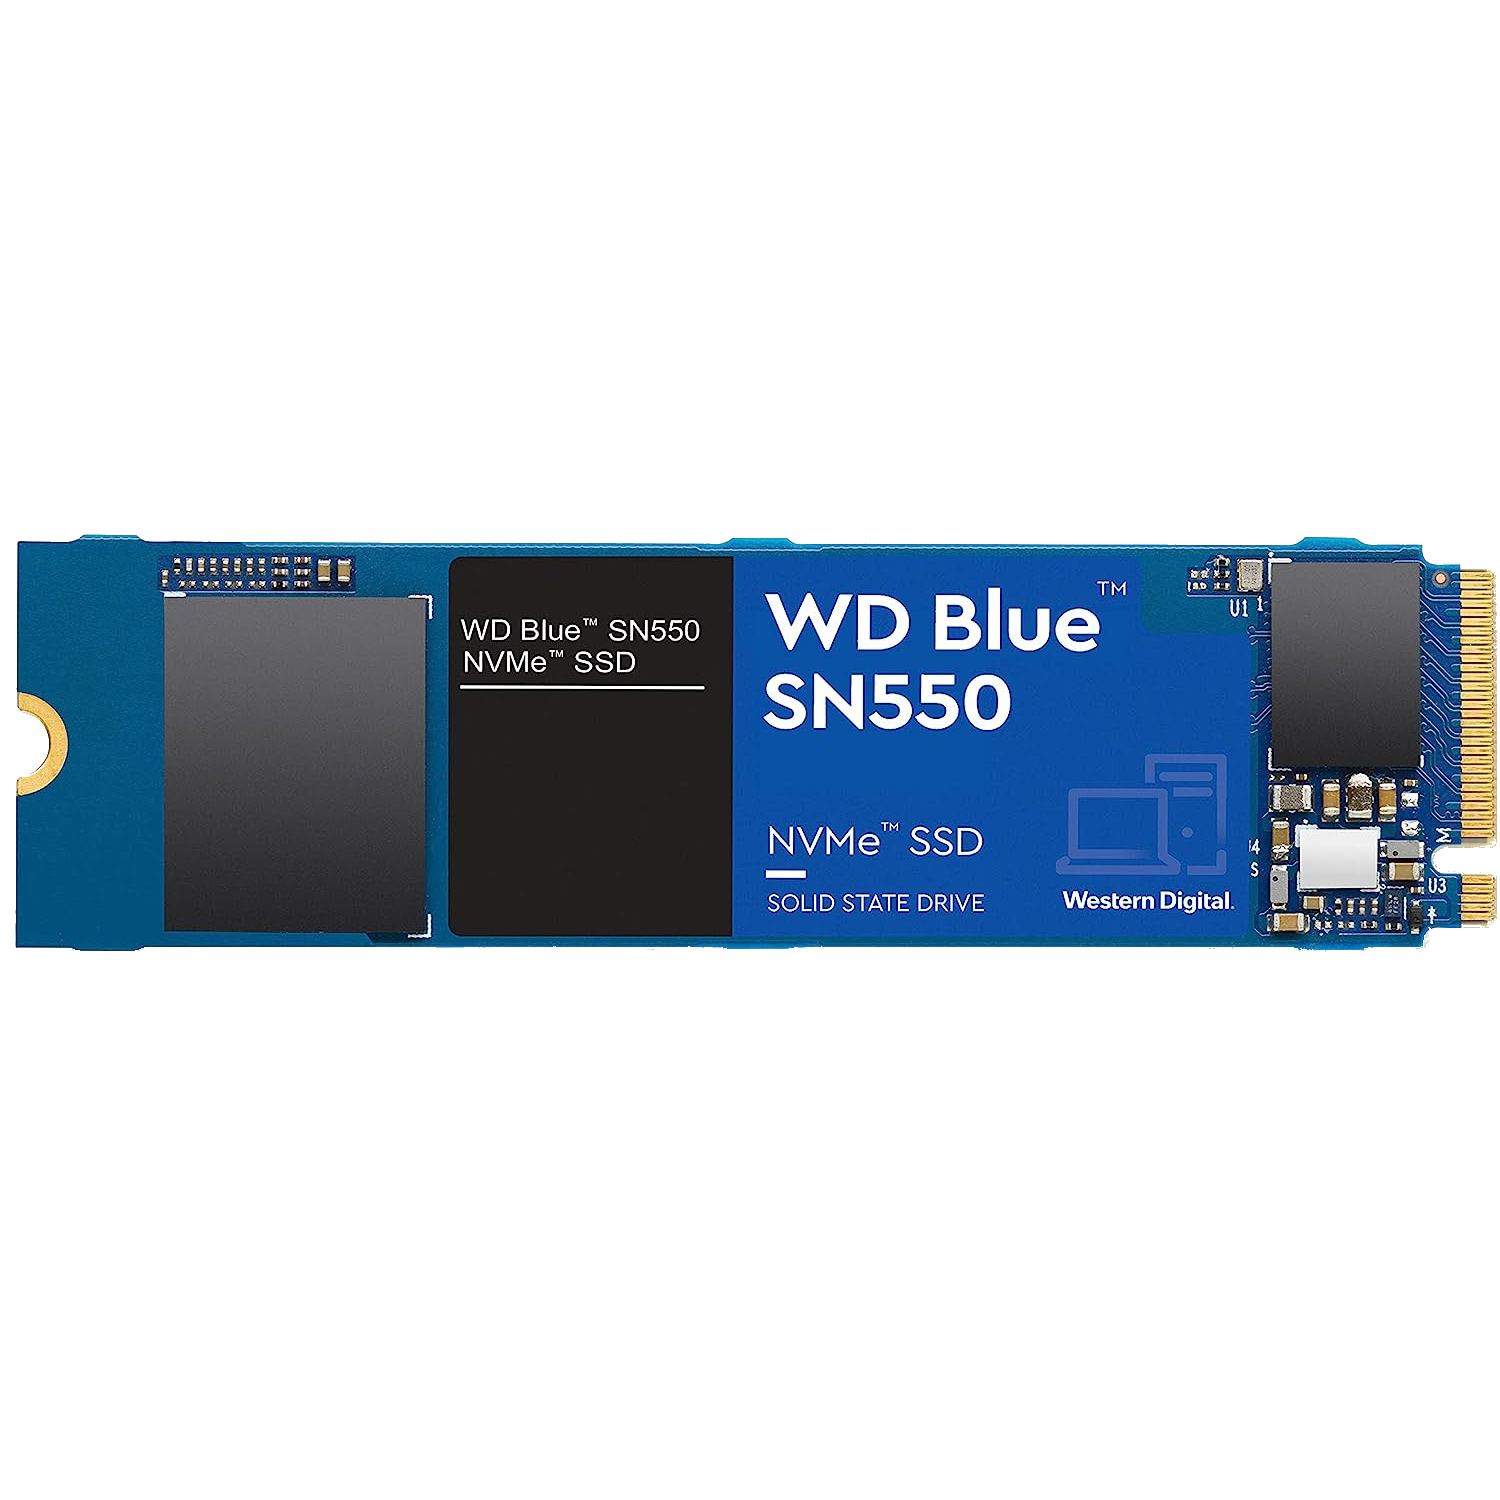 wd blue SN550